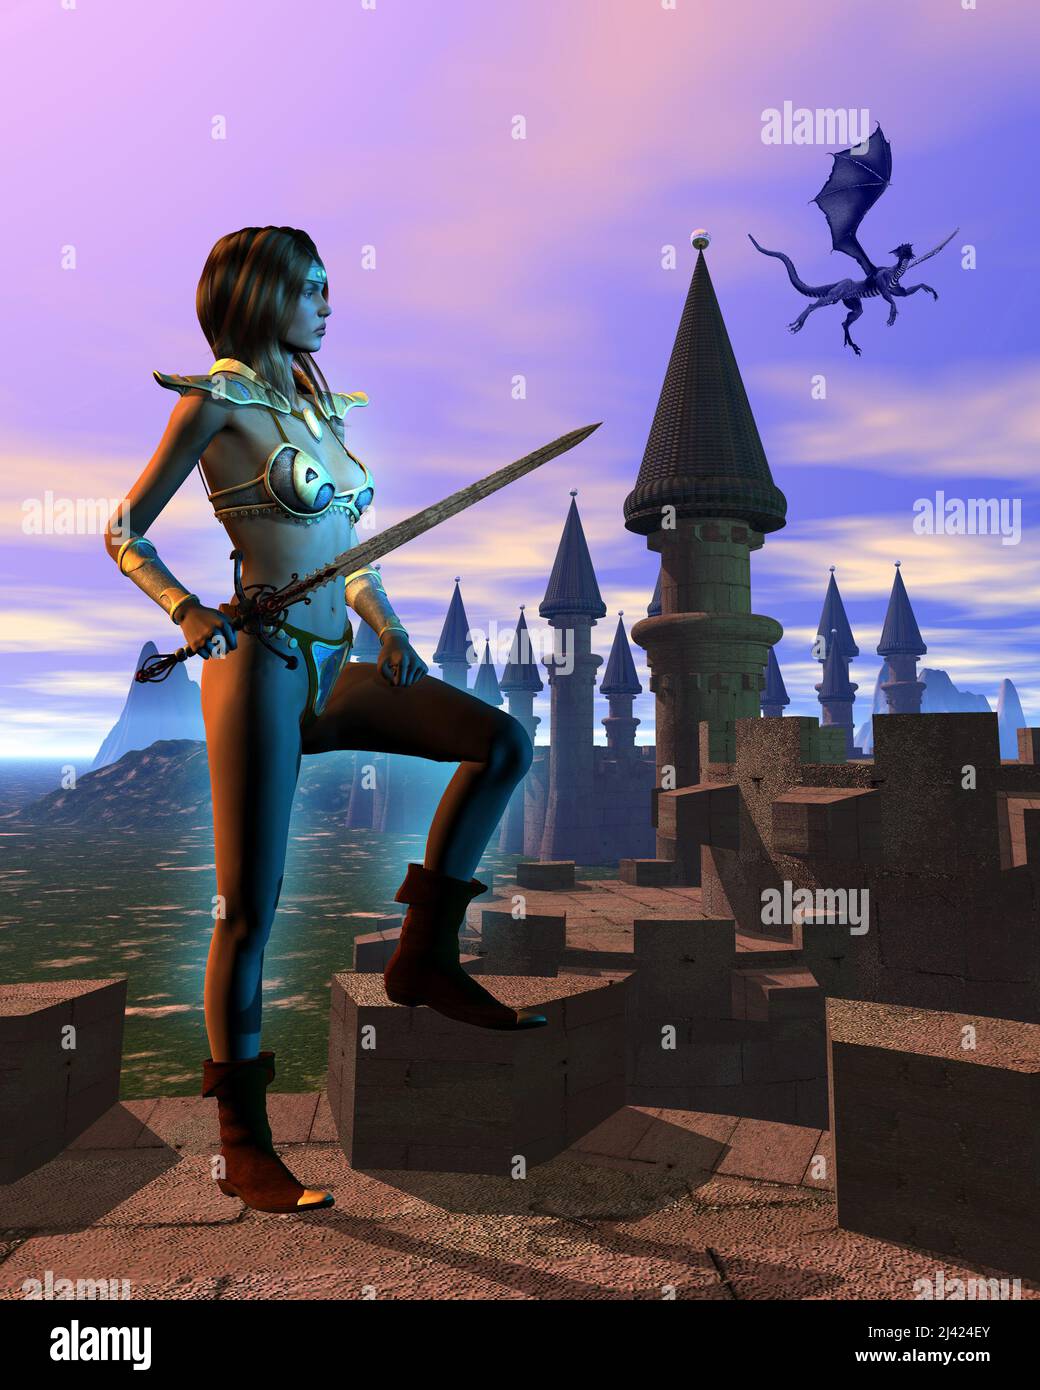 fantasy guerrier femme avec épée près du château, dans le ciel un dragon vole, 3d illustration Banque D'Images